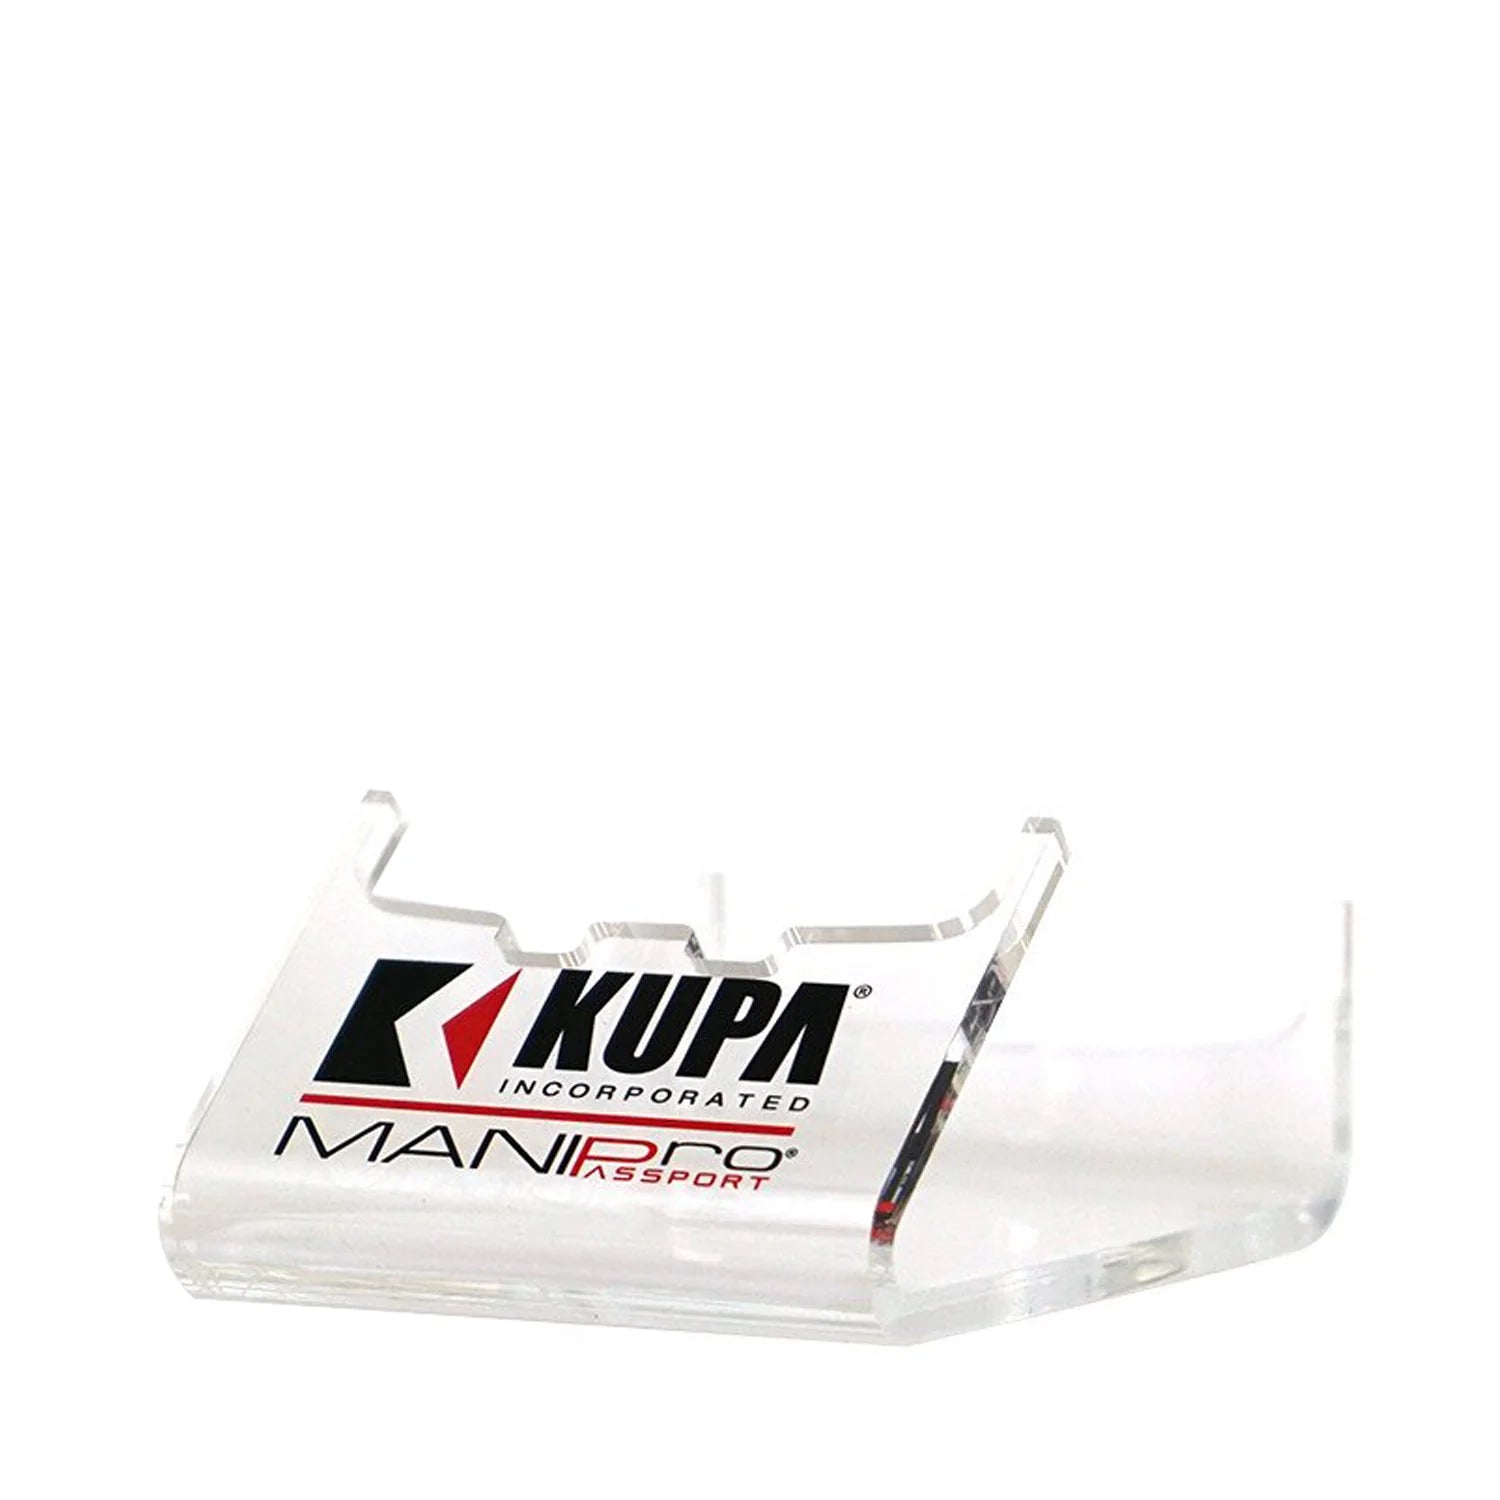 Kupa - MANIPro Passport Control Box Princess - Creata Beauty - Professional Beauty Products